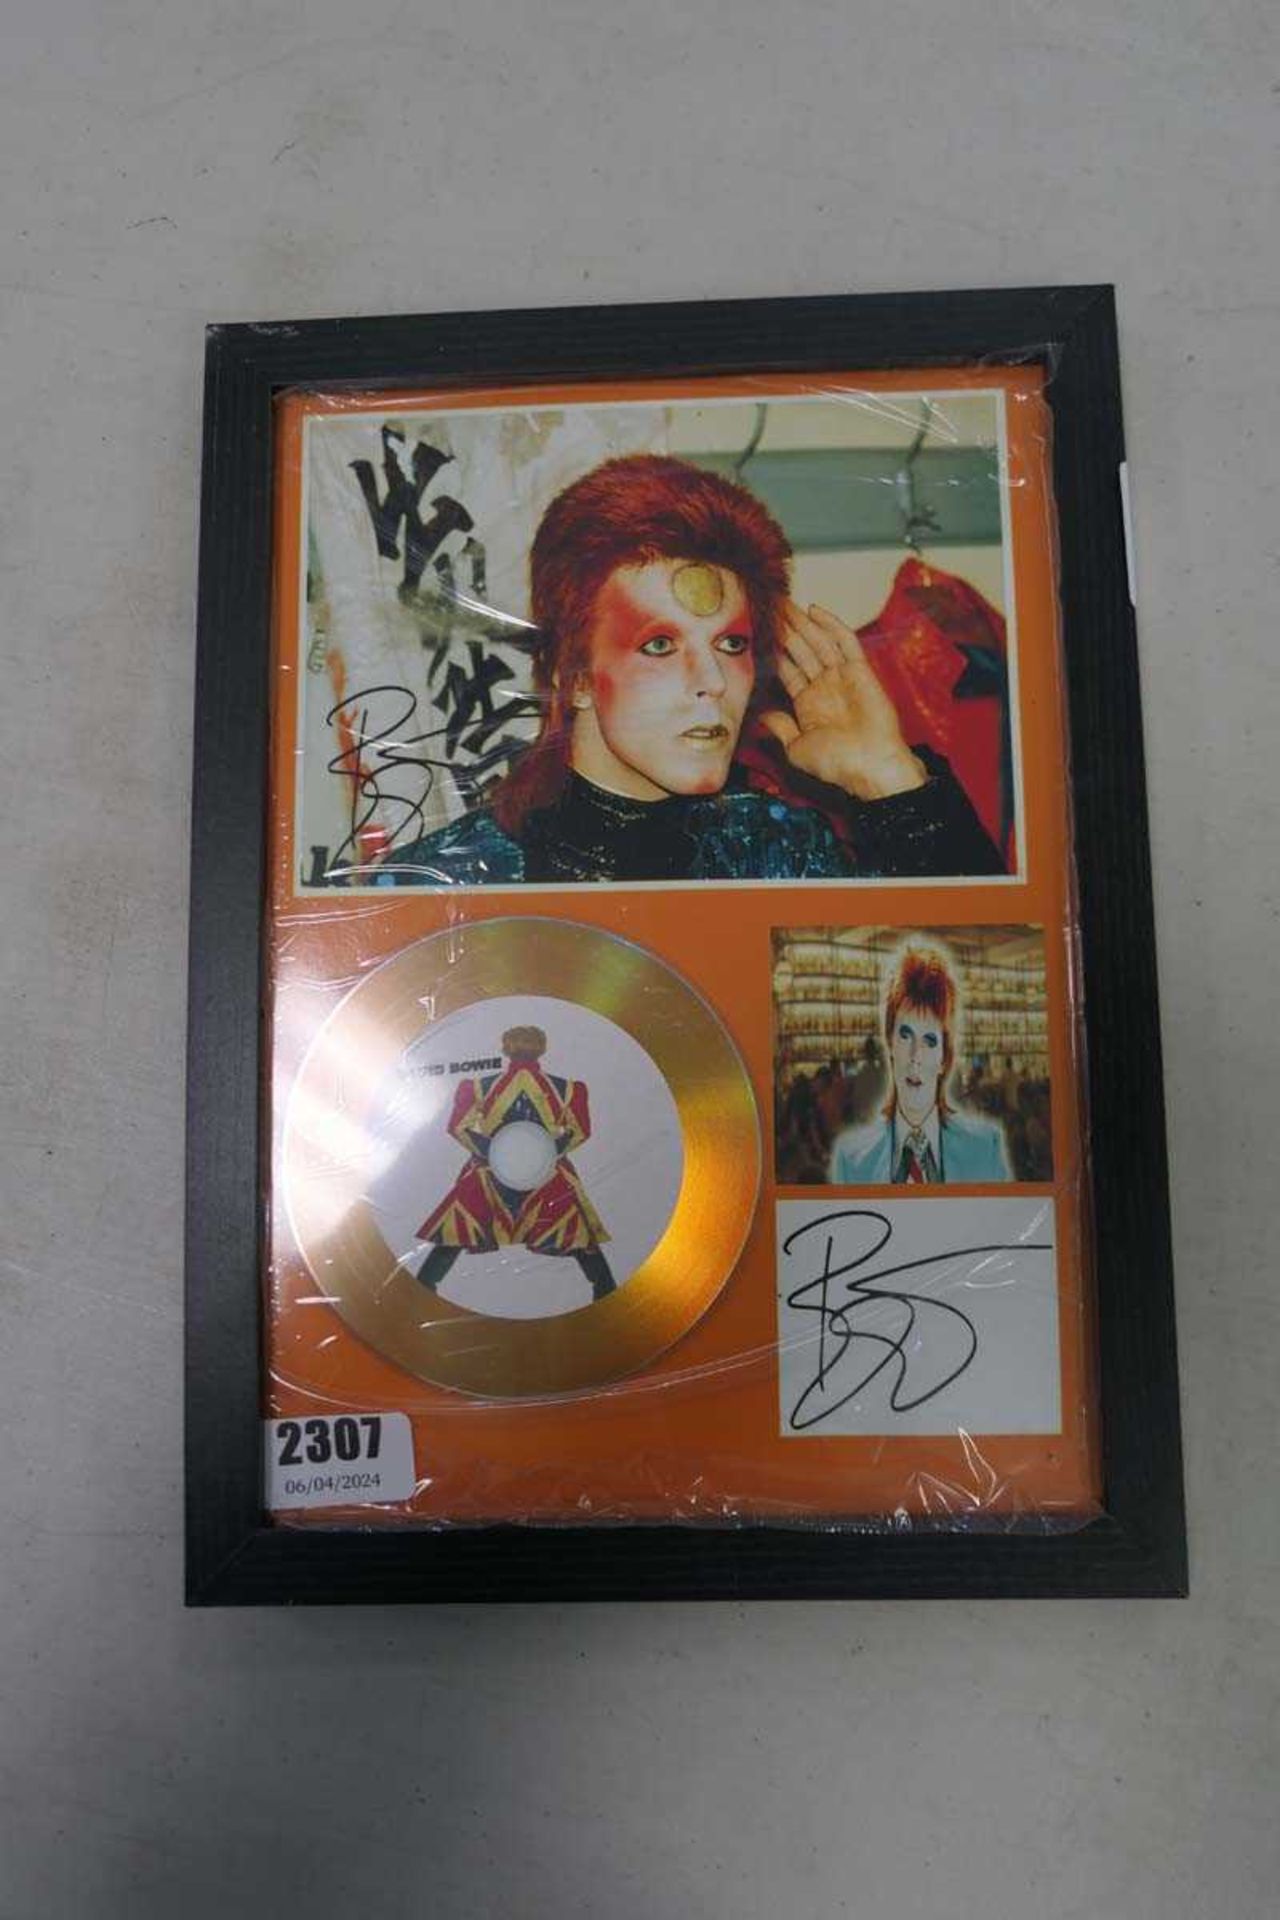 David Bowie framed CD